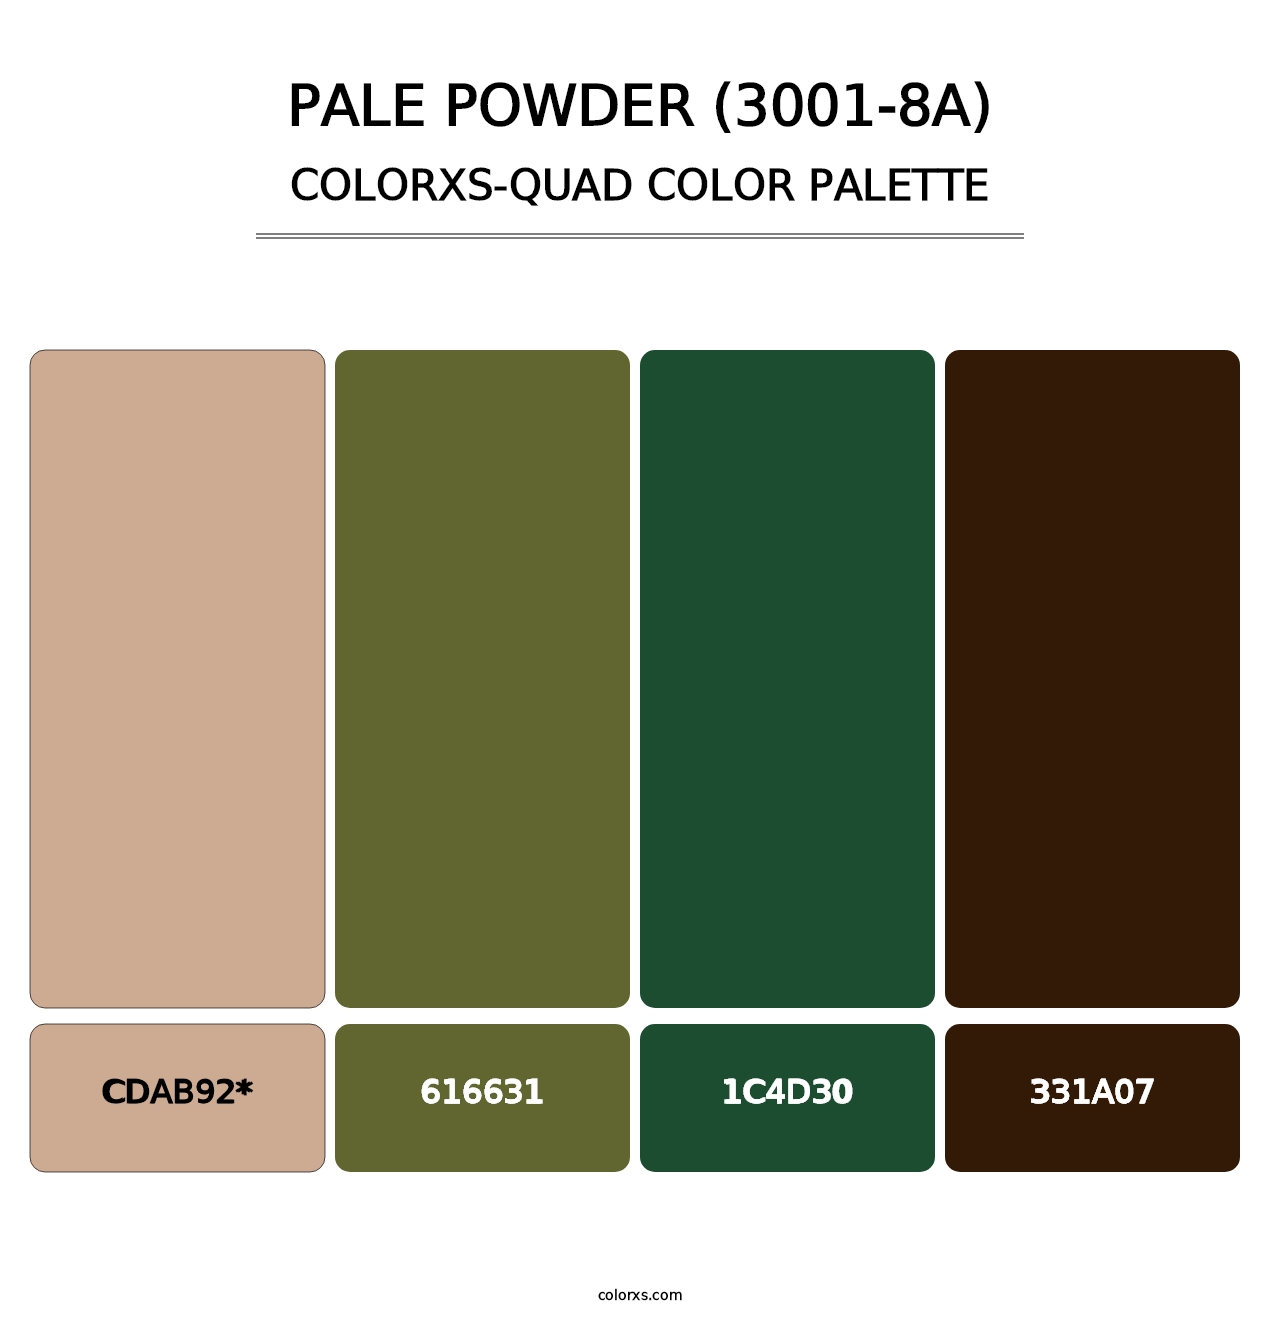 Pale Powder (3001-8A) - Colorxs Quad Palette